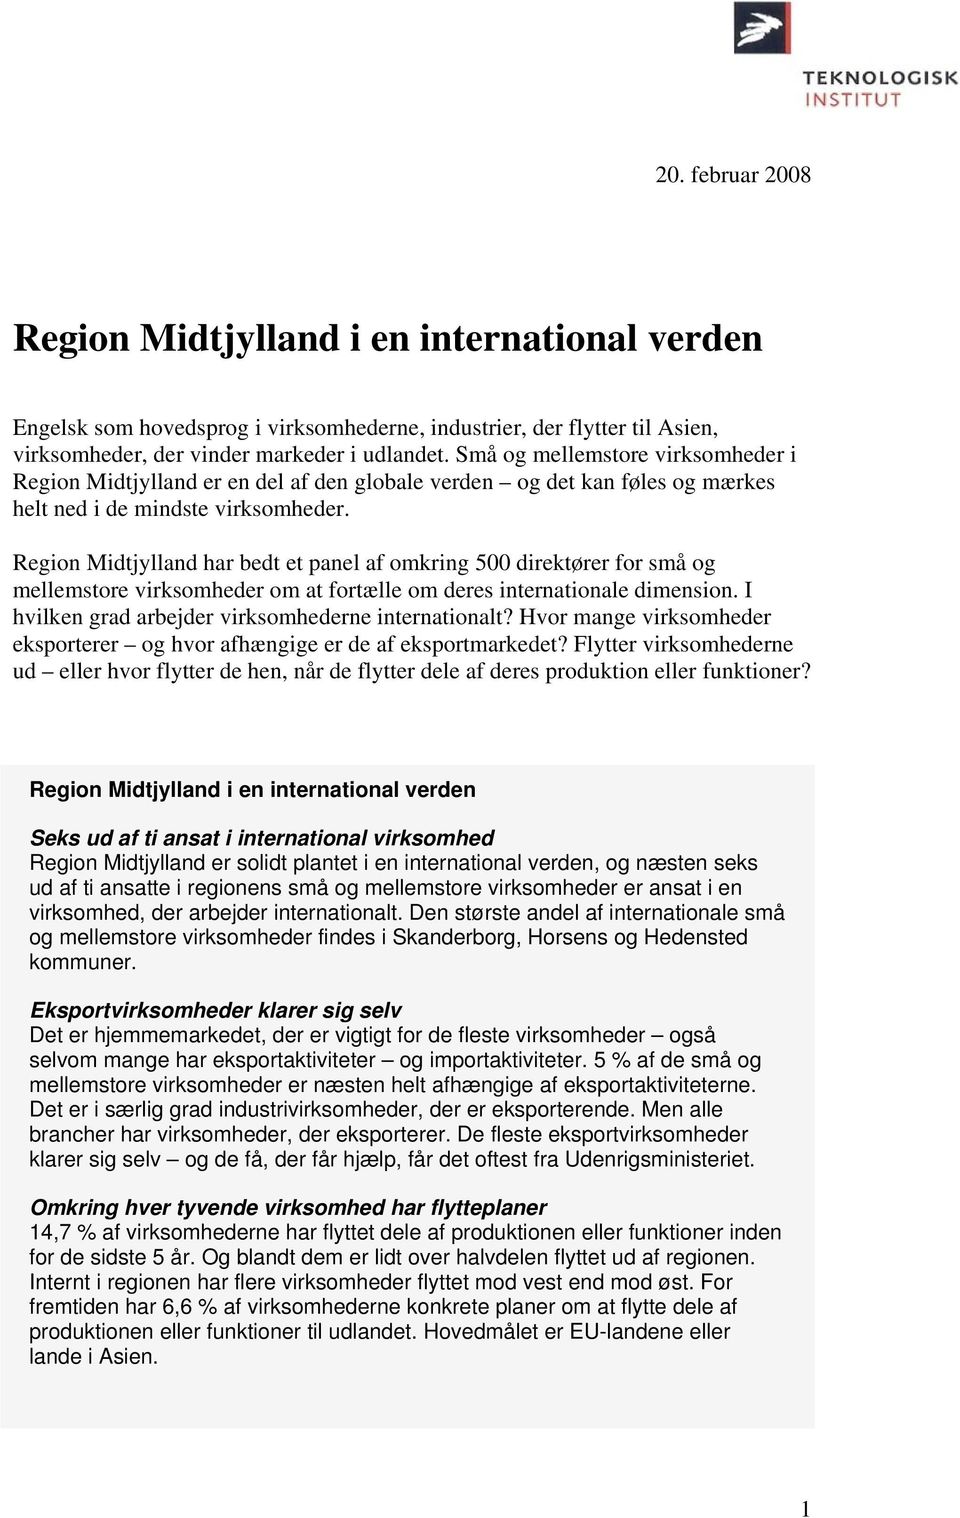 Region Midtjylland har bedt et panel af omkring 500 direktører for små og mellemstore virksomheder om at fortælle om deres internationale dimension.